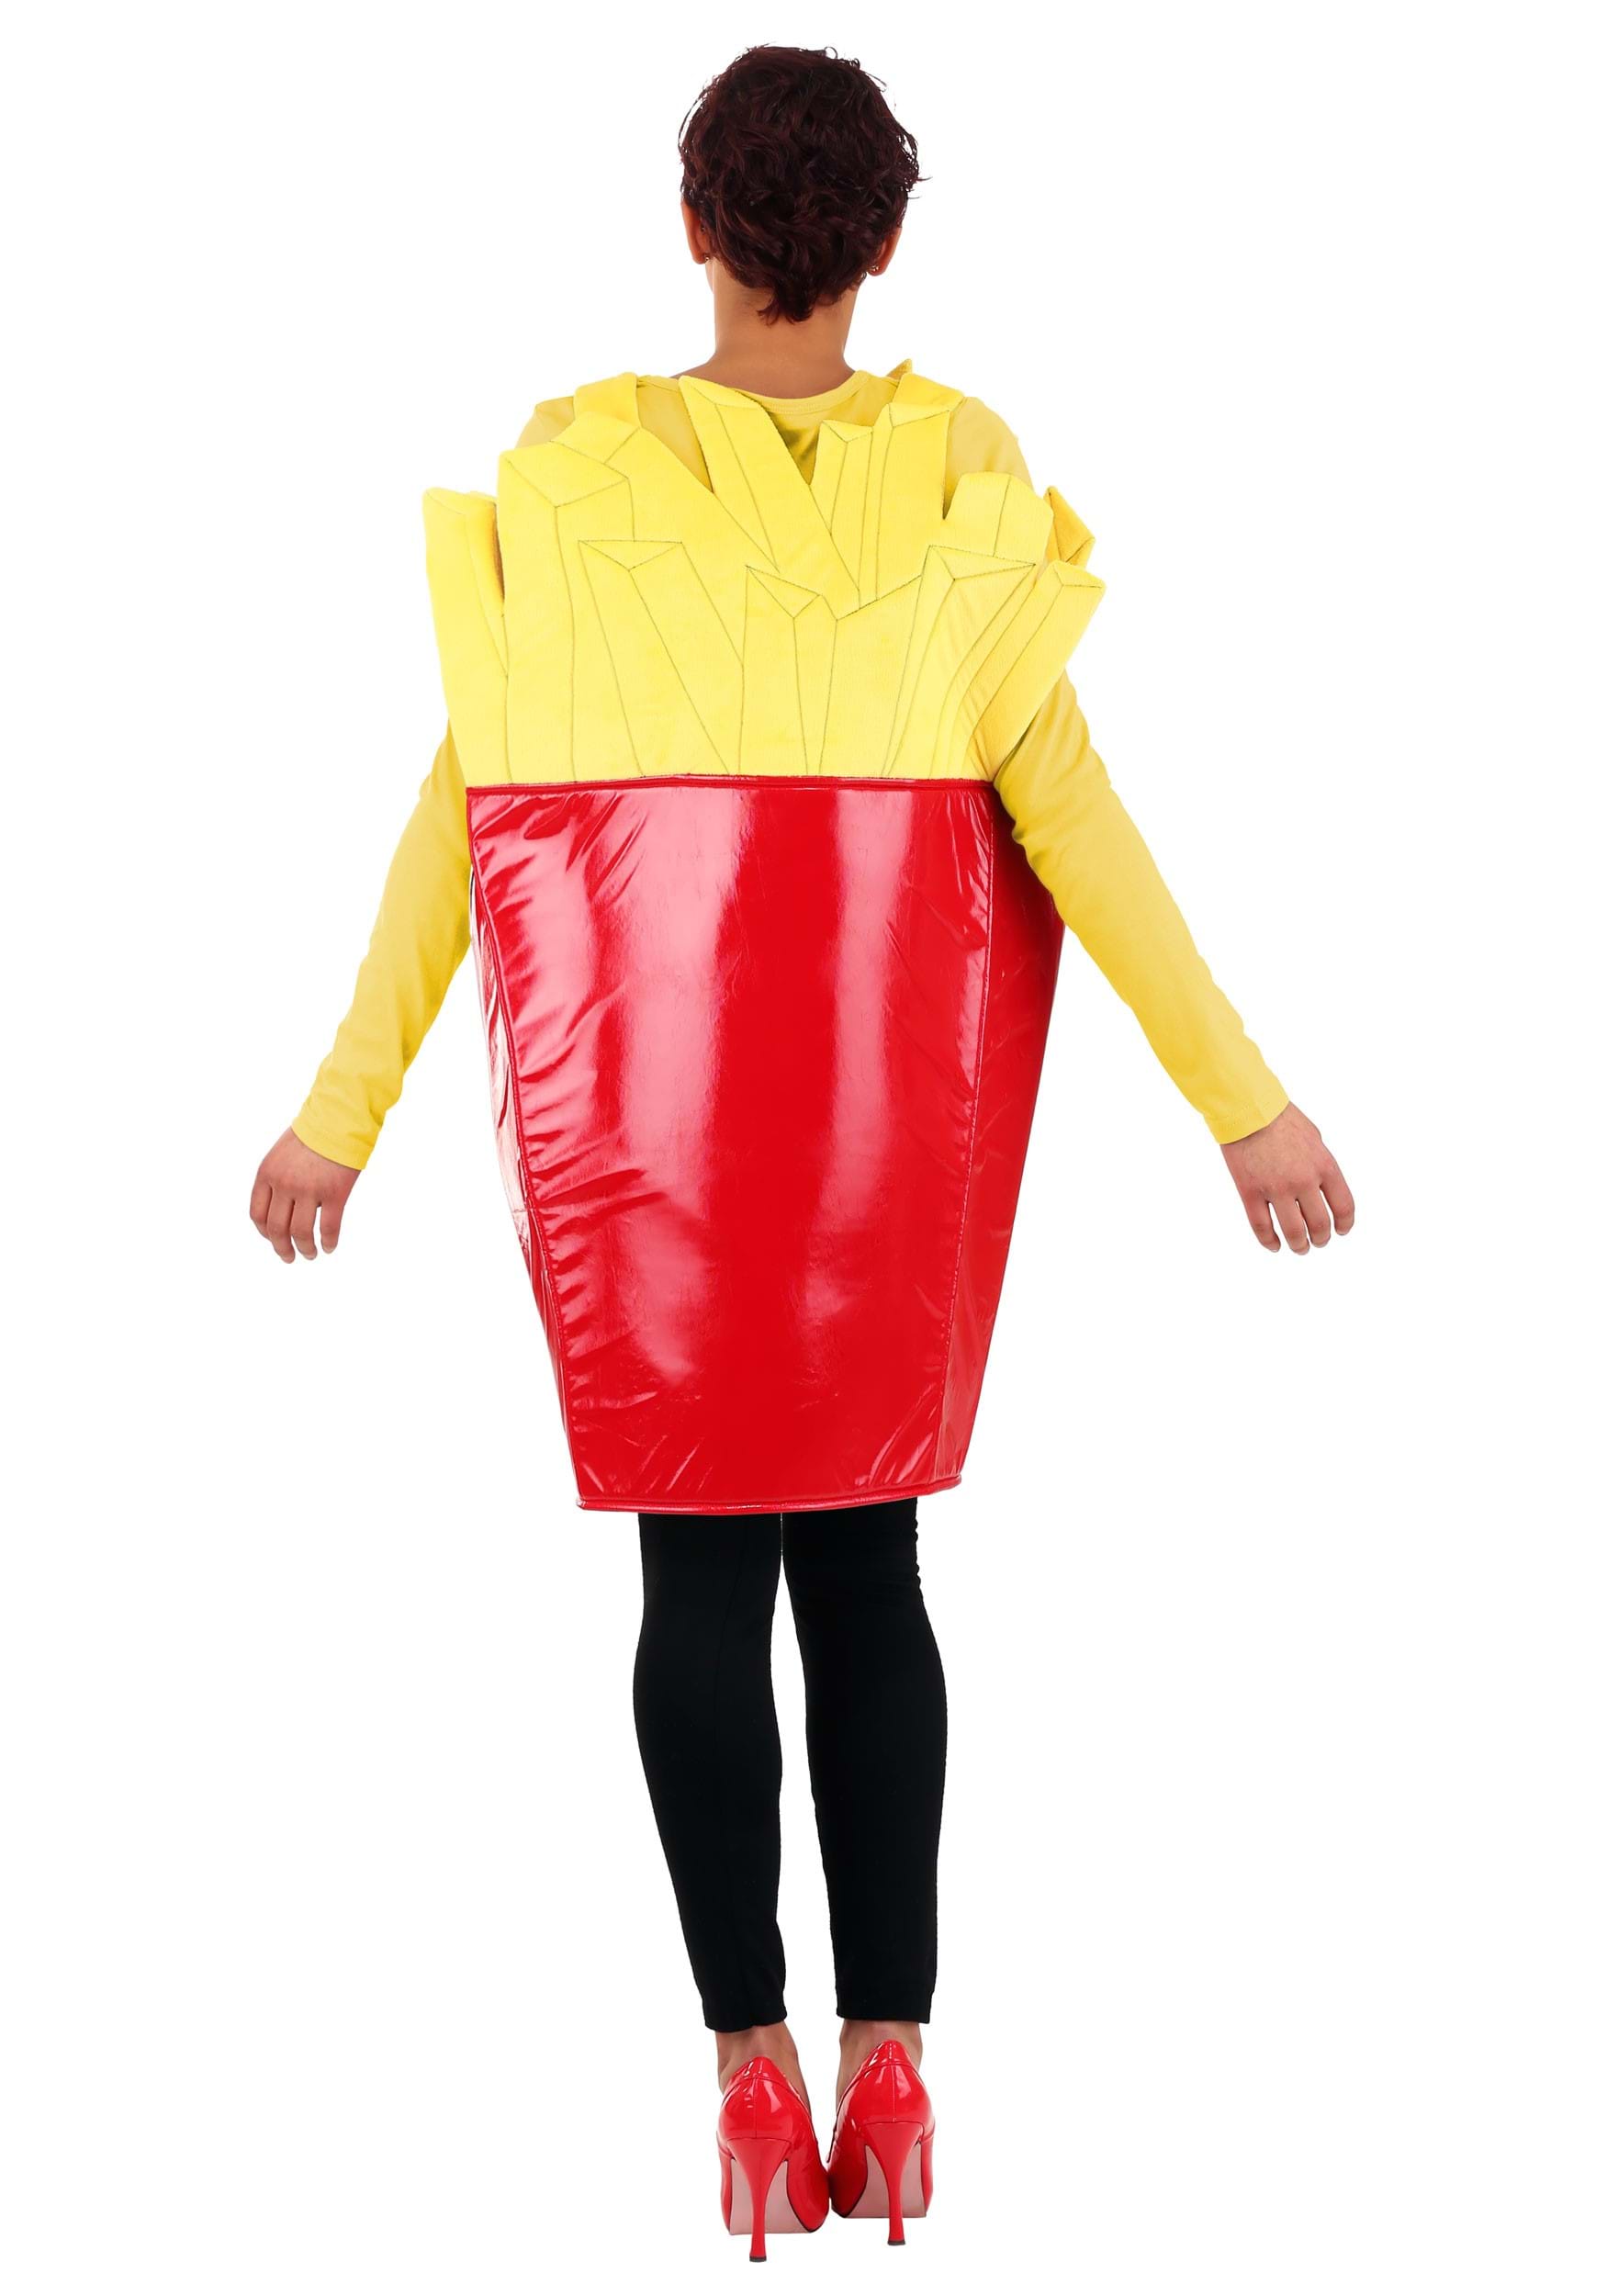 Fast Food Fries Adult Costume